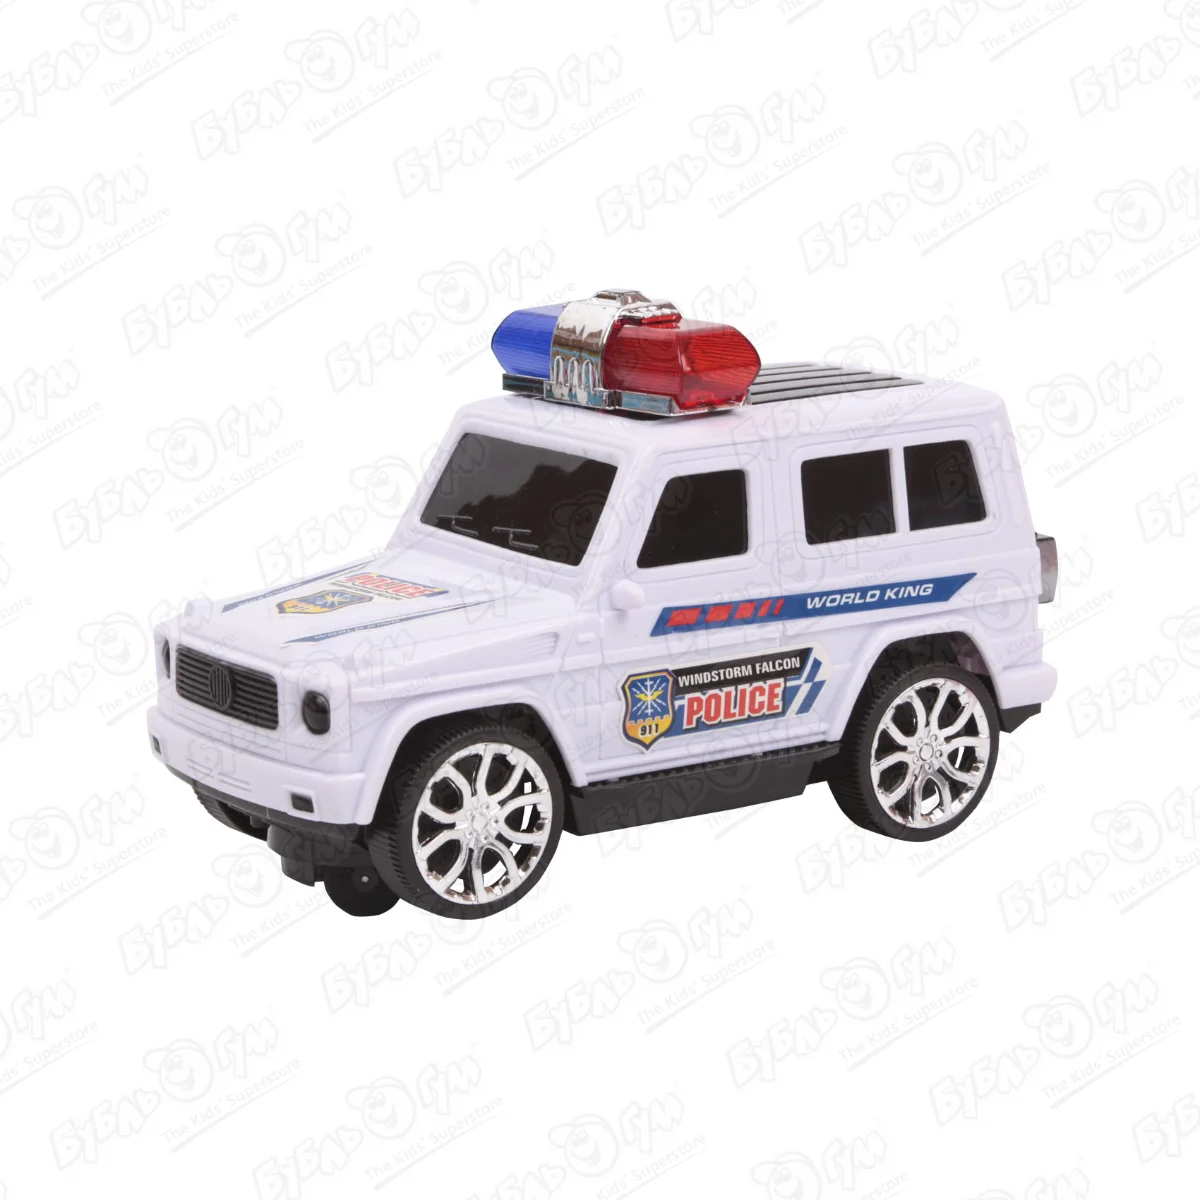 Машина Lanson Toys Джип Police 911 World King моторизированная световые звуковые эффекты